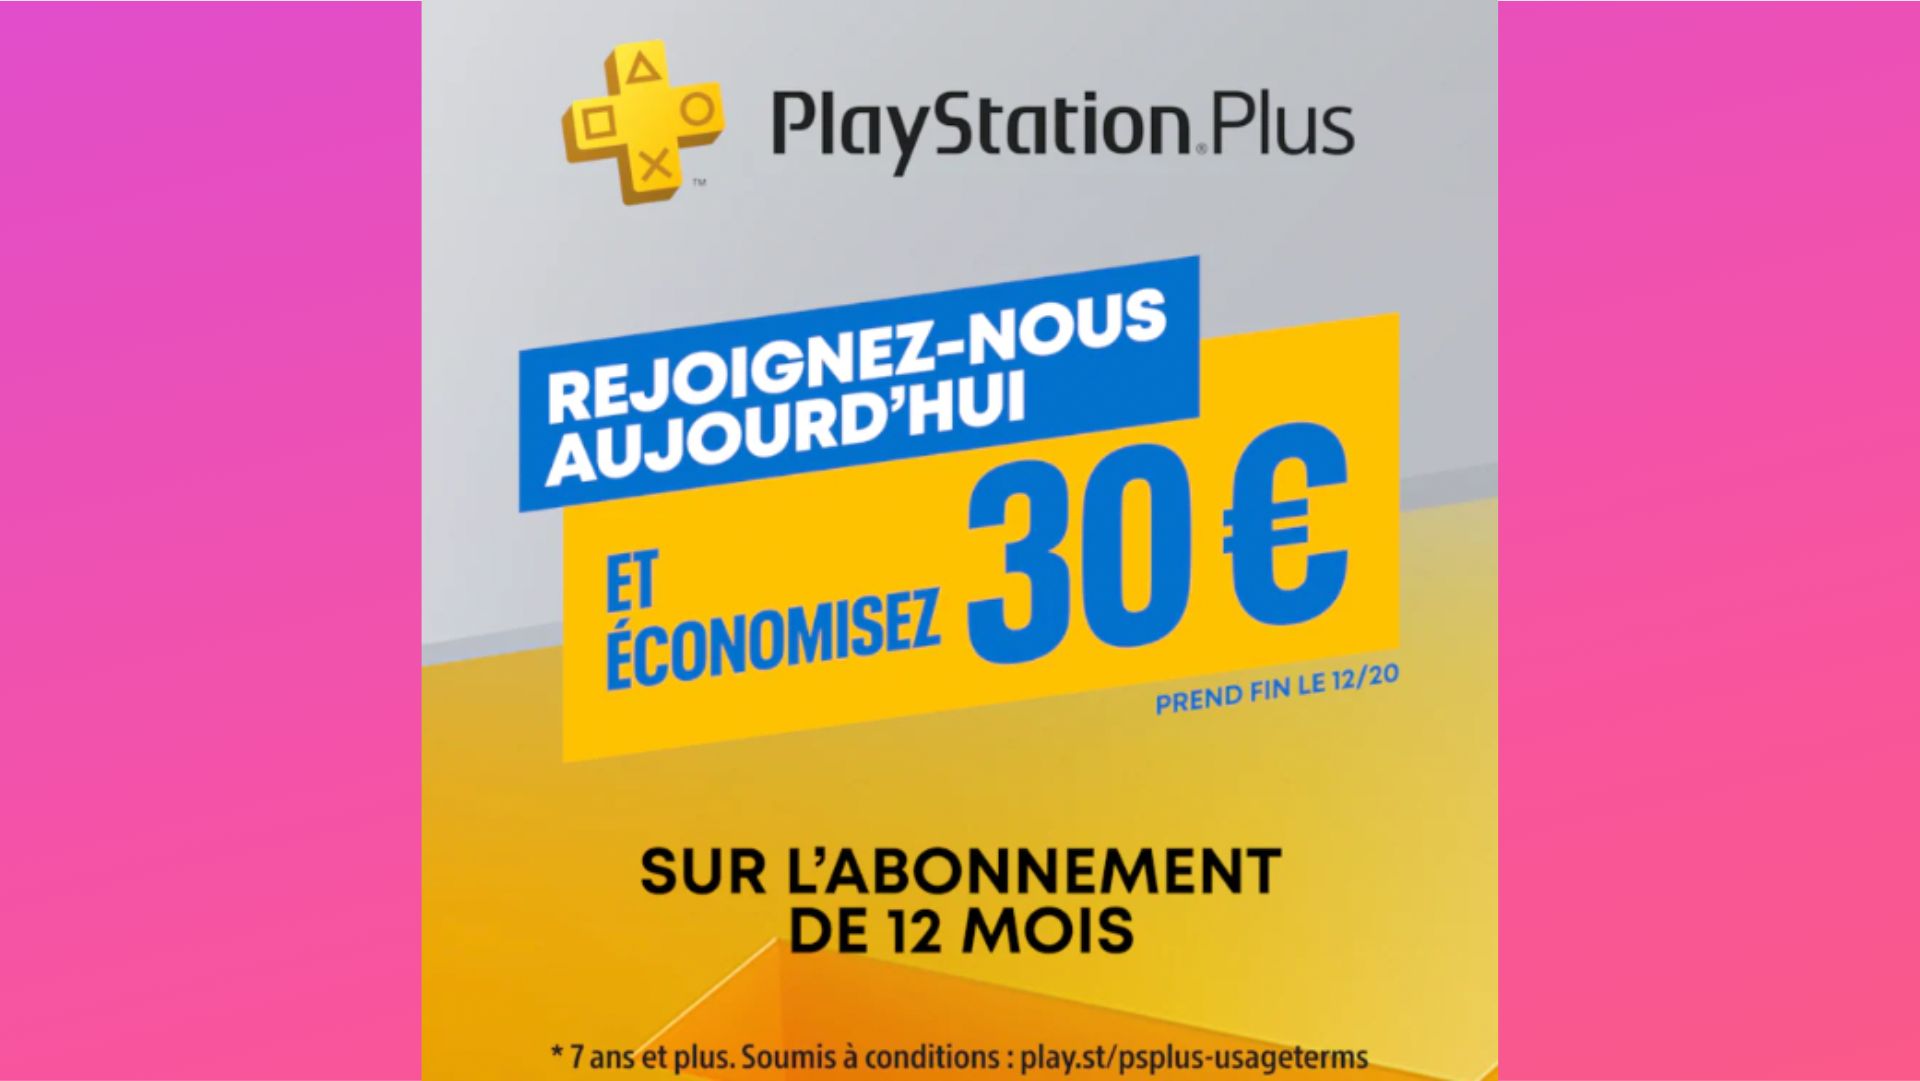 PlayStation Plus : les prix des abonnements Essential, Extra et Premium  sont en baisse